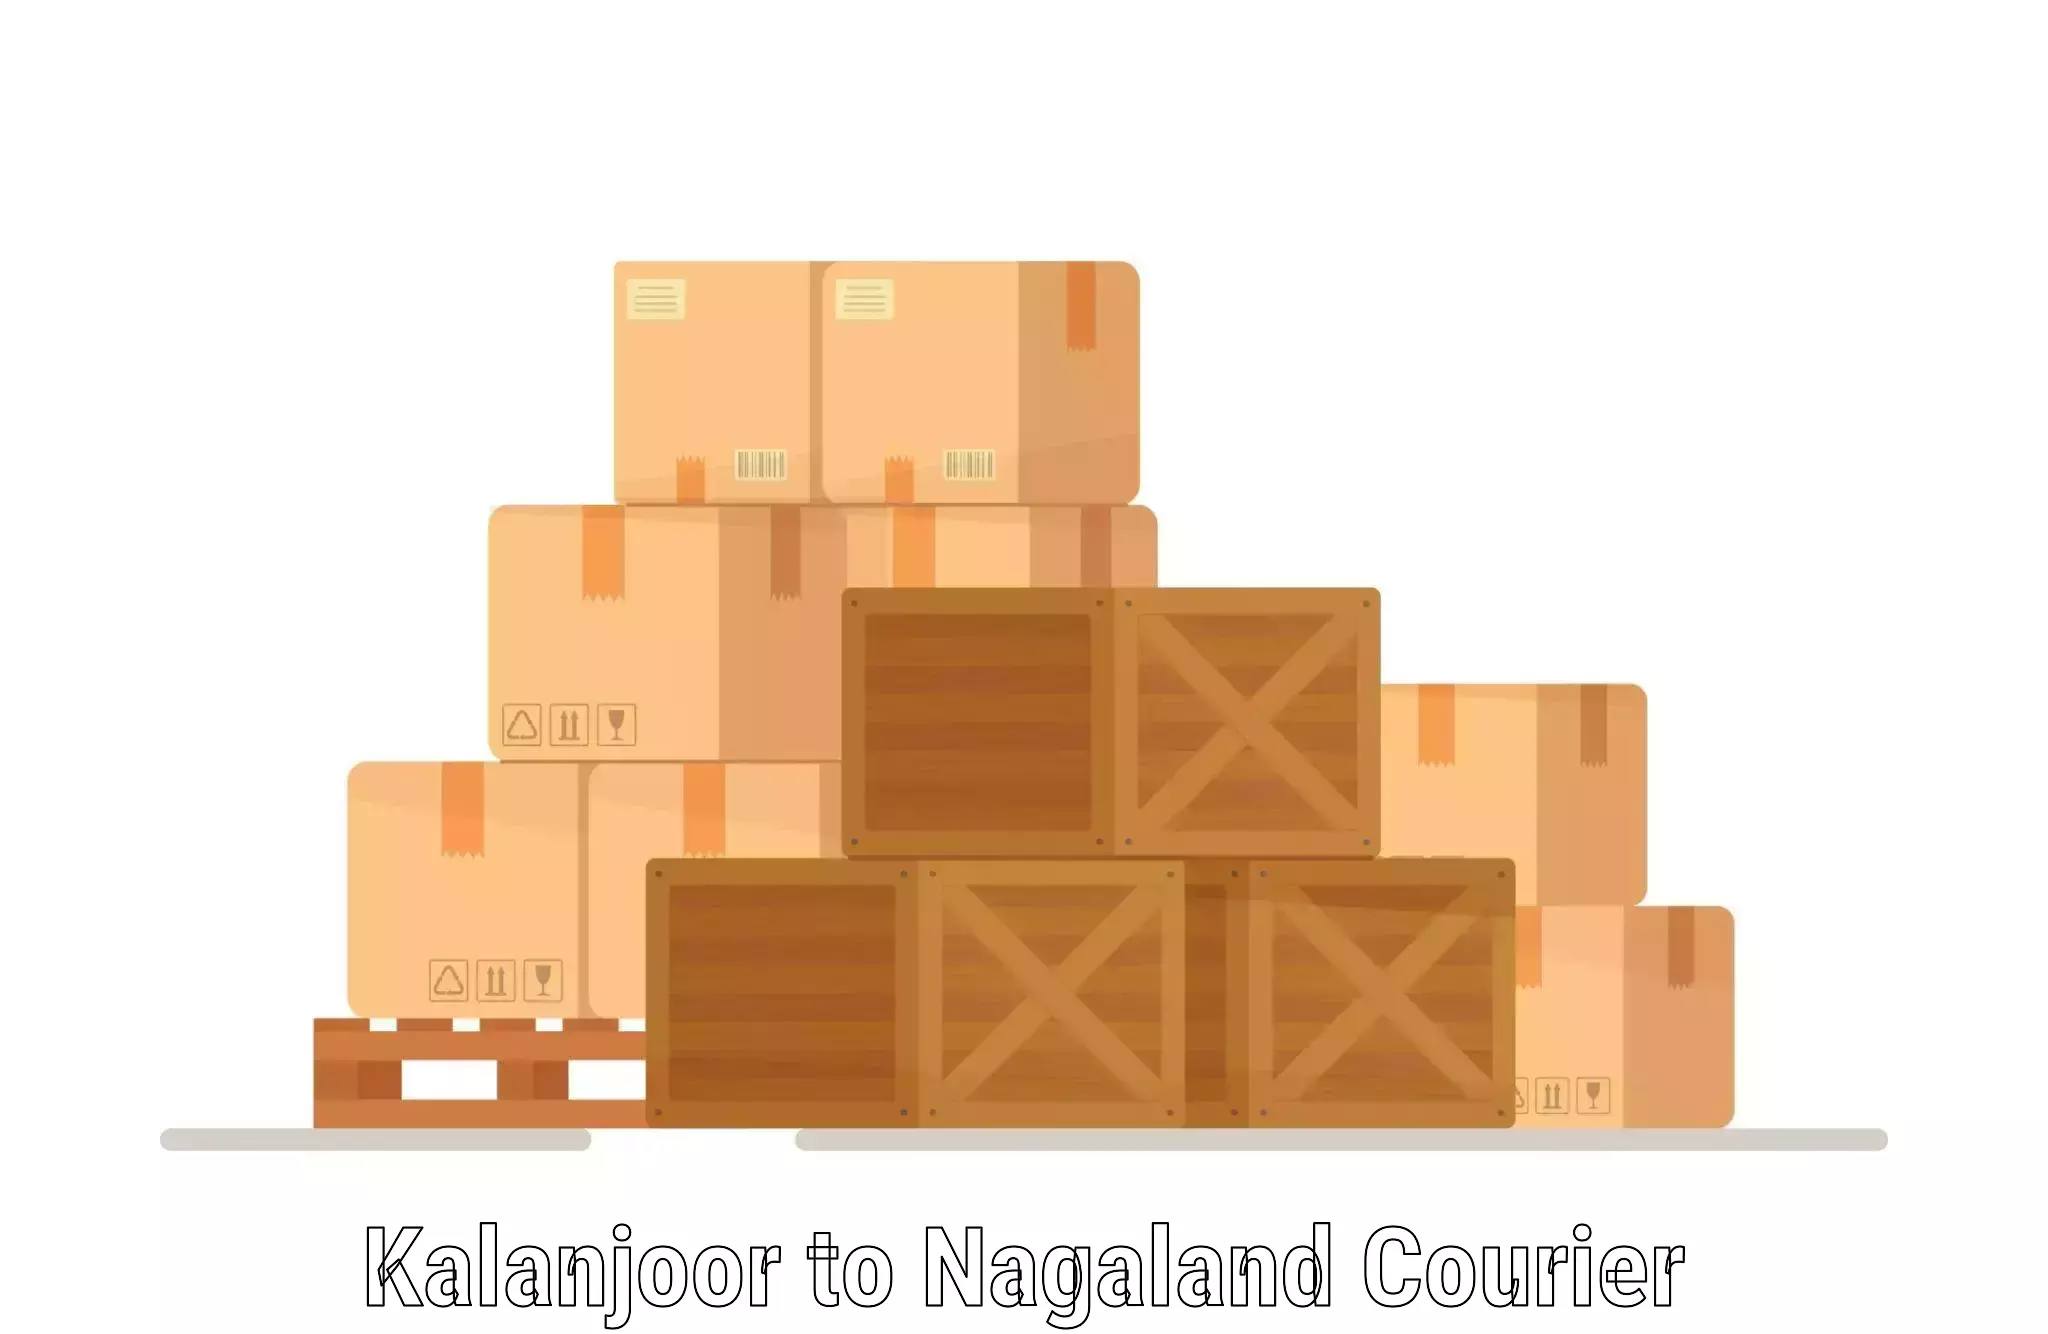 Business logistics support Kalanjoor to Nagaland